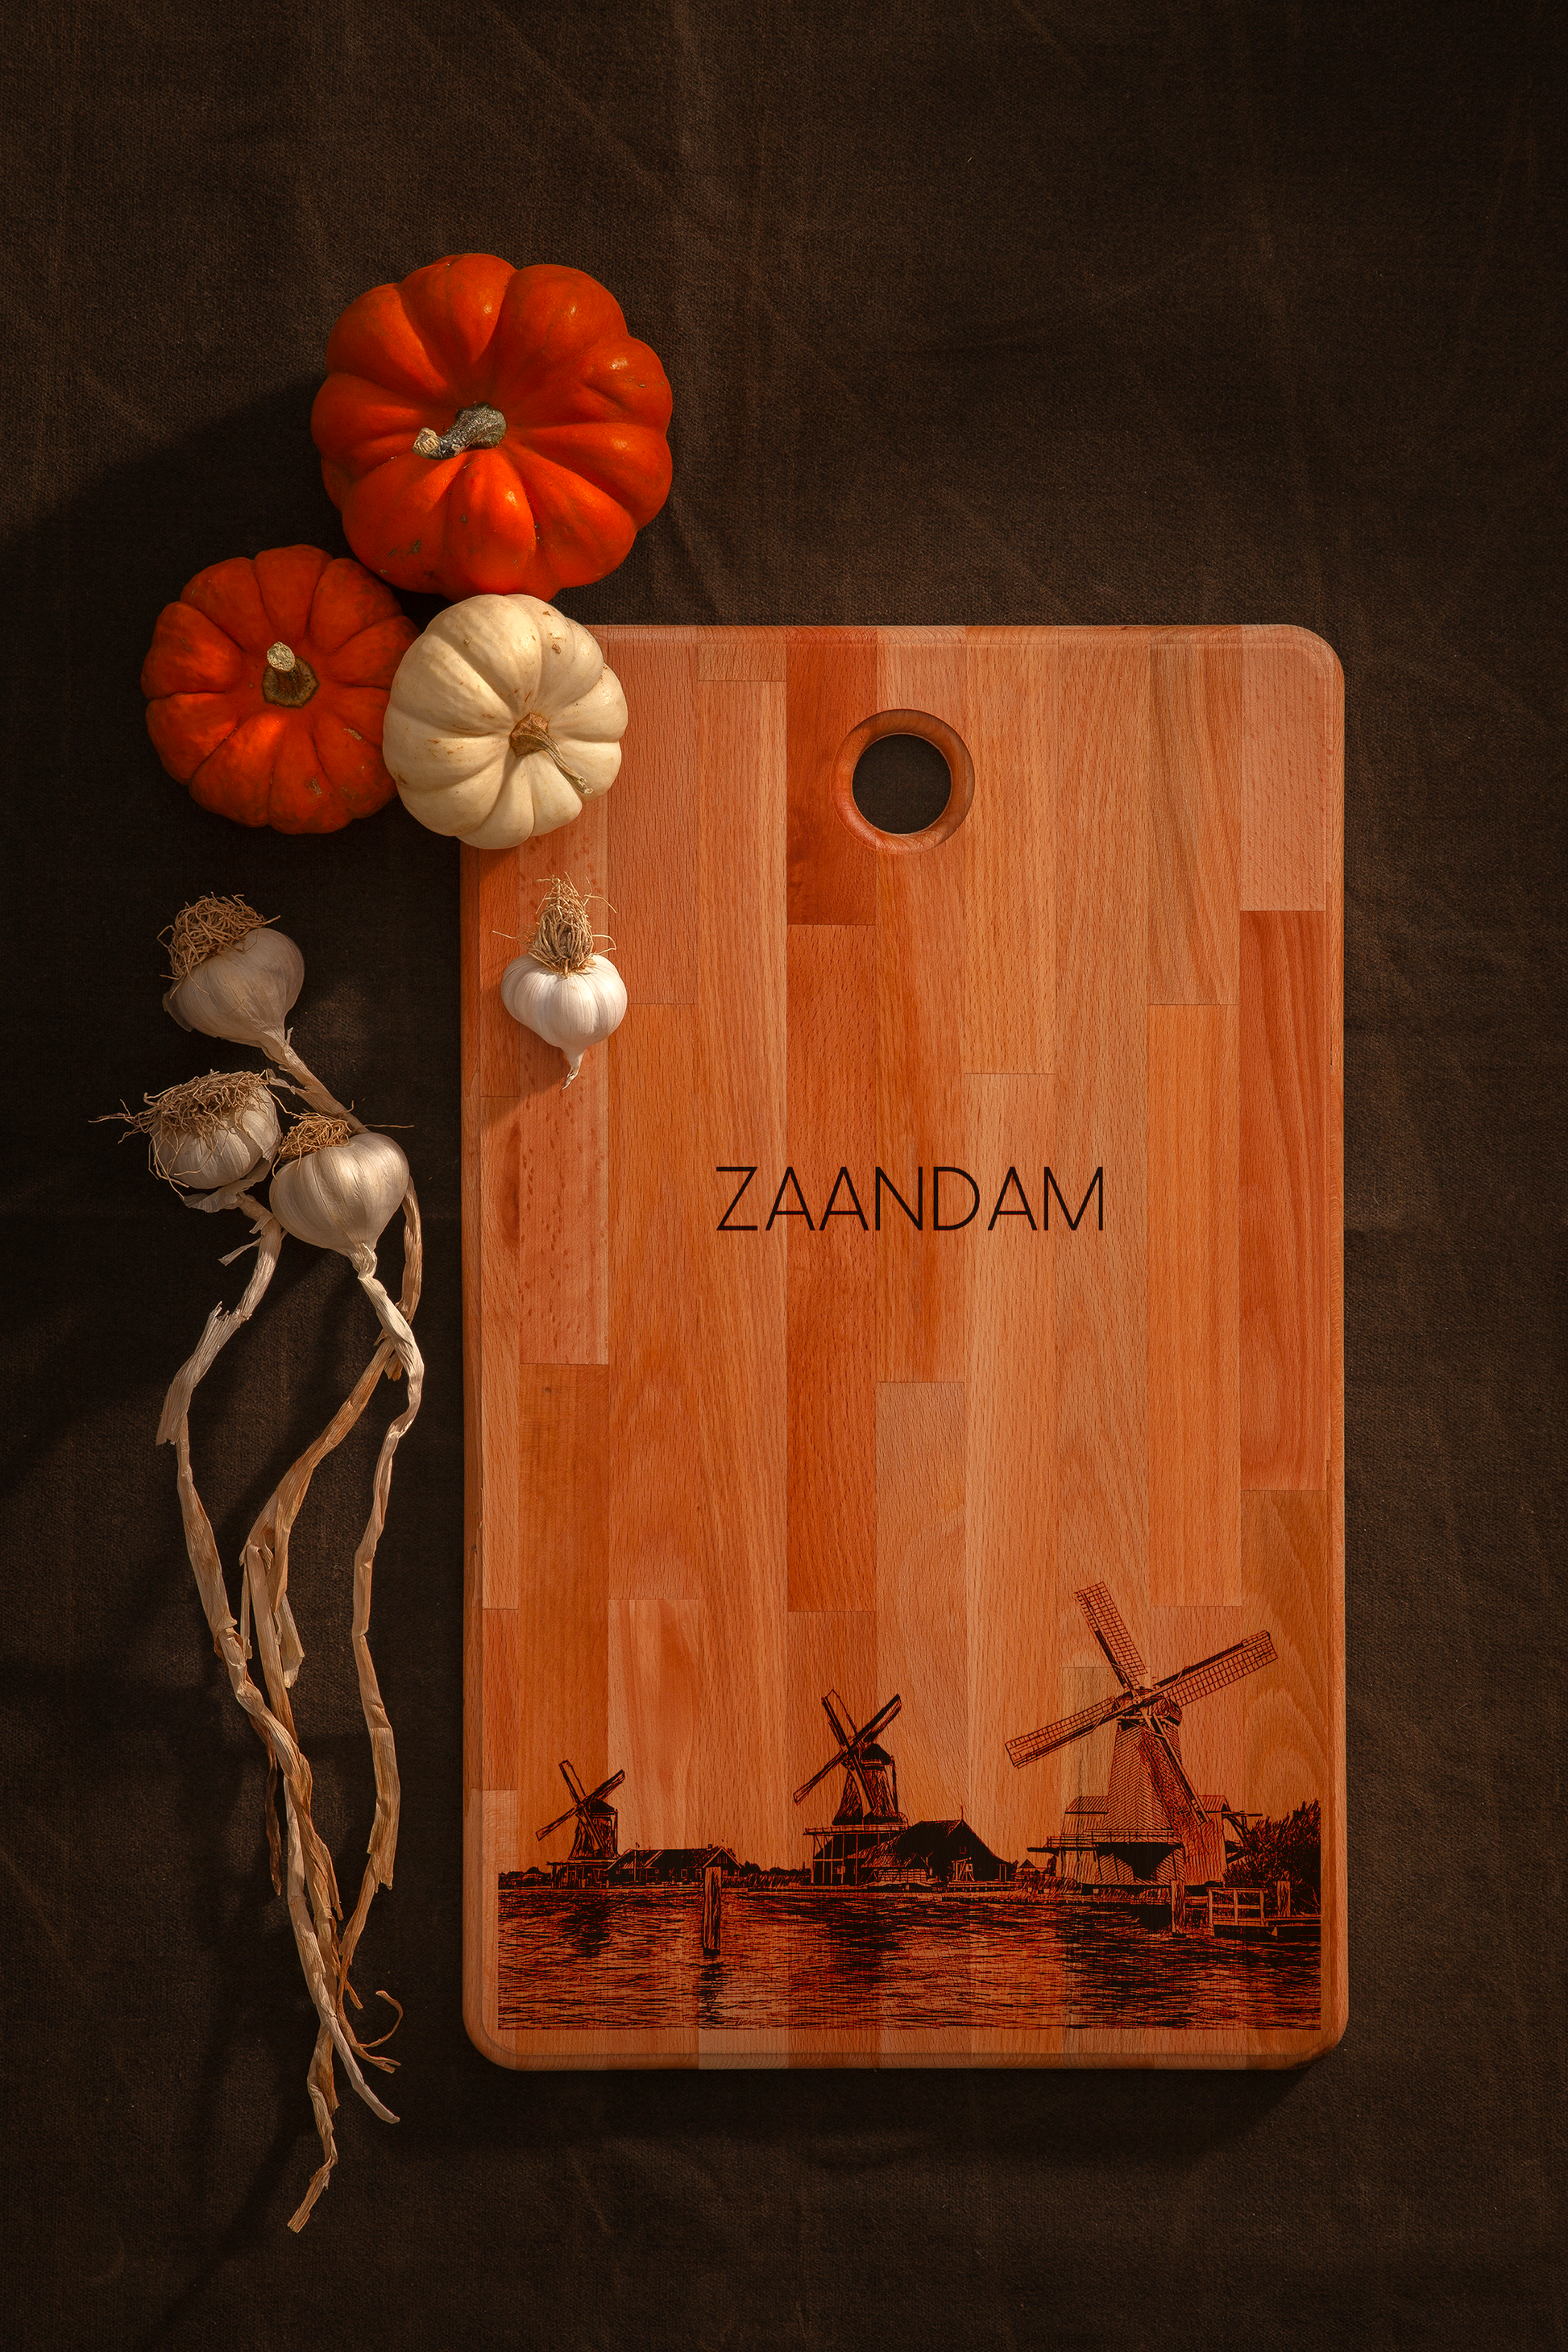 Zaandam, Zaanse Schans, cutting board, 